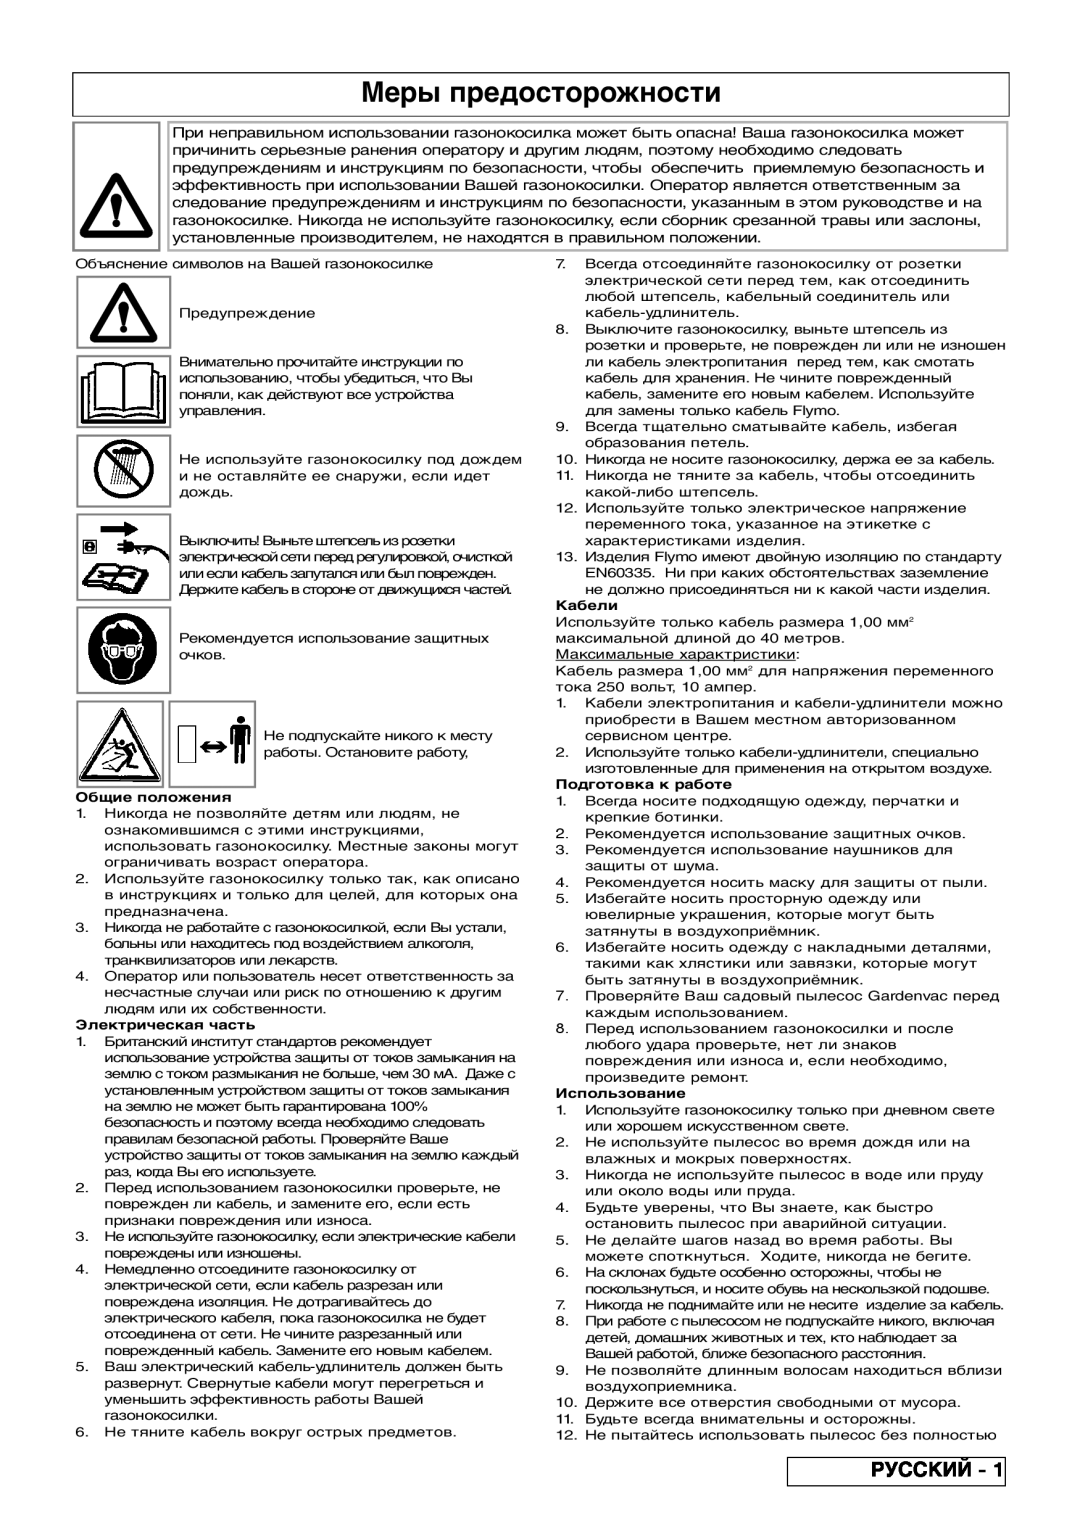 Flymo 2200, 2500 manual Меры предосторожности, Русский, Общие положения, Электрическая часть, Кабели, Подготовка к работе 